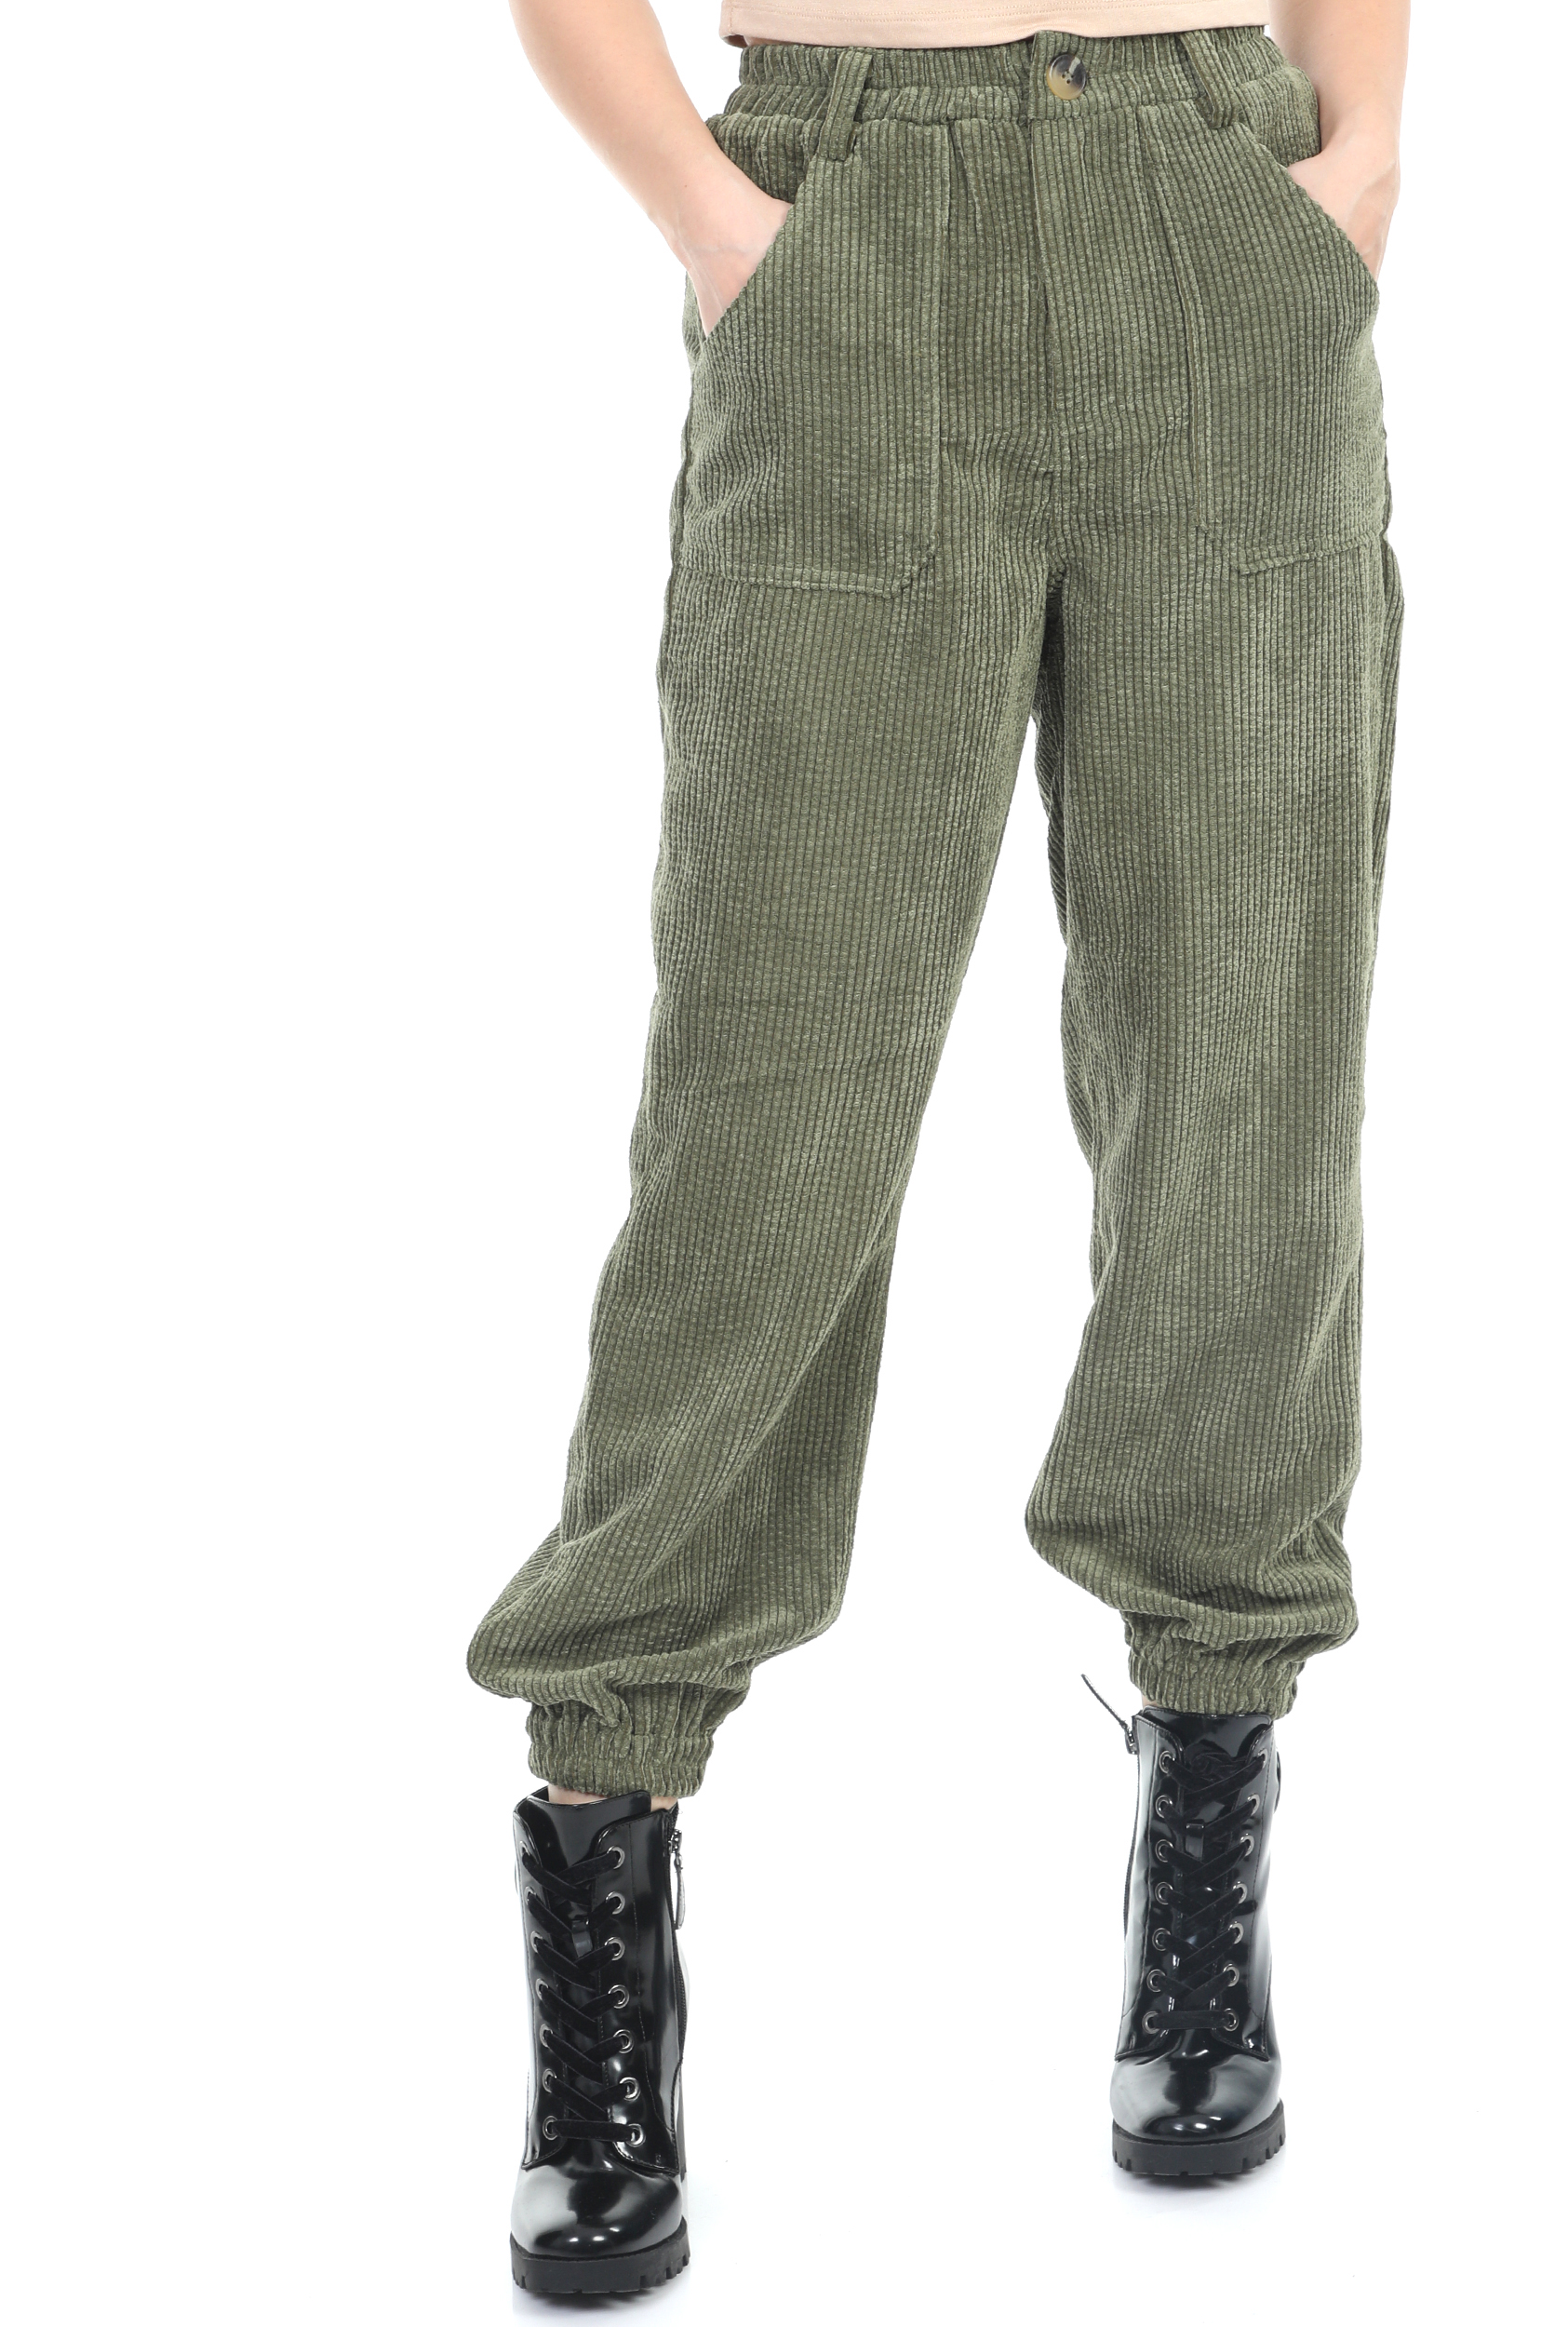 Γυναικεία/Ρούχα/Παντελόνια/Ισια Γραμμή KENDALL+KYLIE - Γυναικείο παντελόνι KENDALL+KYLIE πράσινο